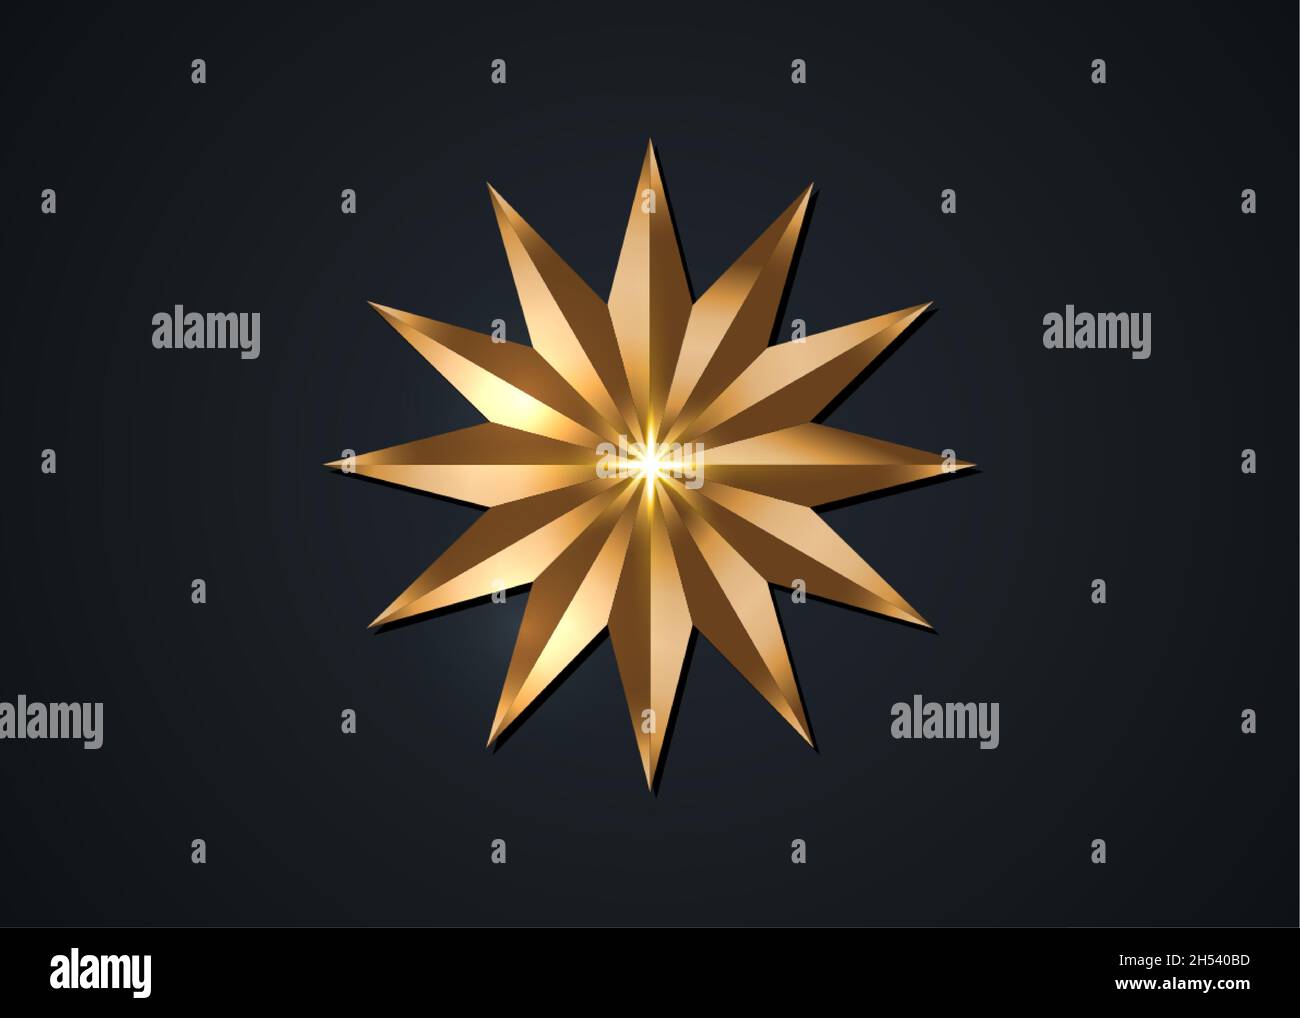 douze étoiles pointues, icône rose de luxe dorée.Image clipart isolée sur fond noir Illustration de Vecteur